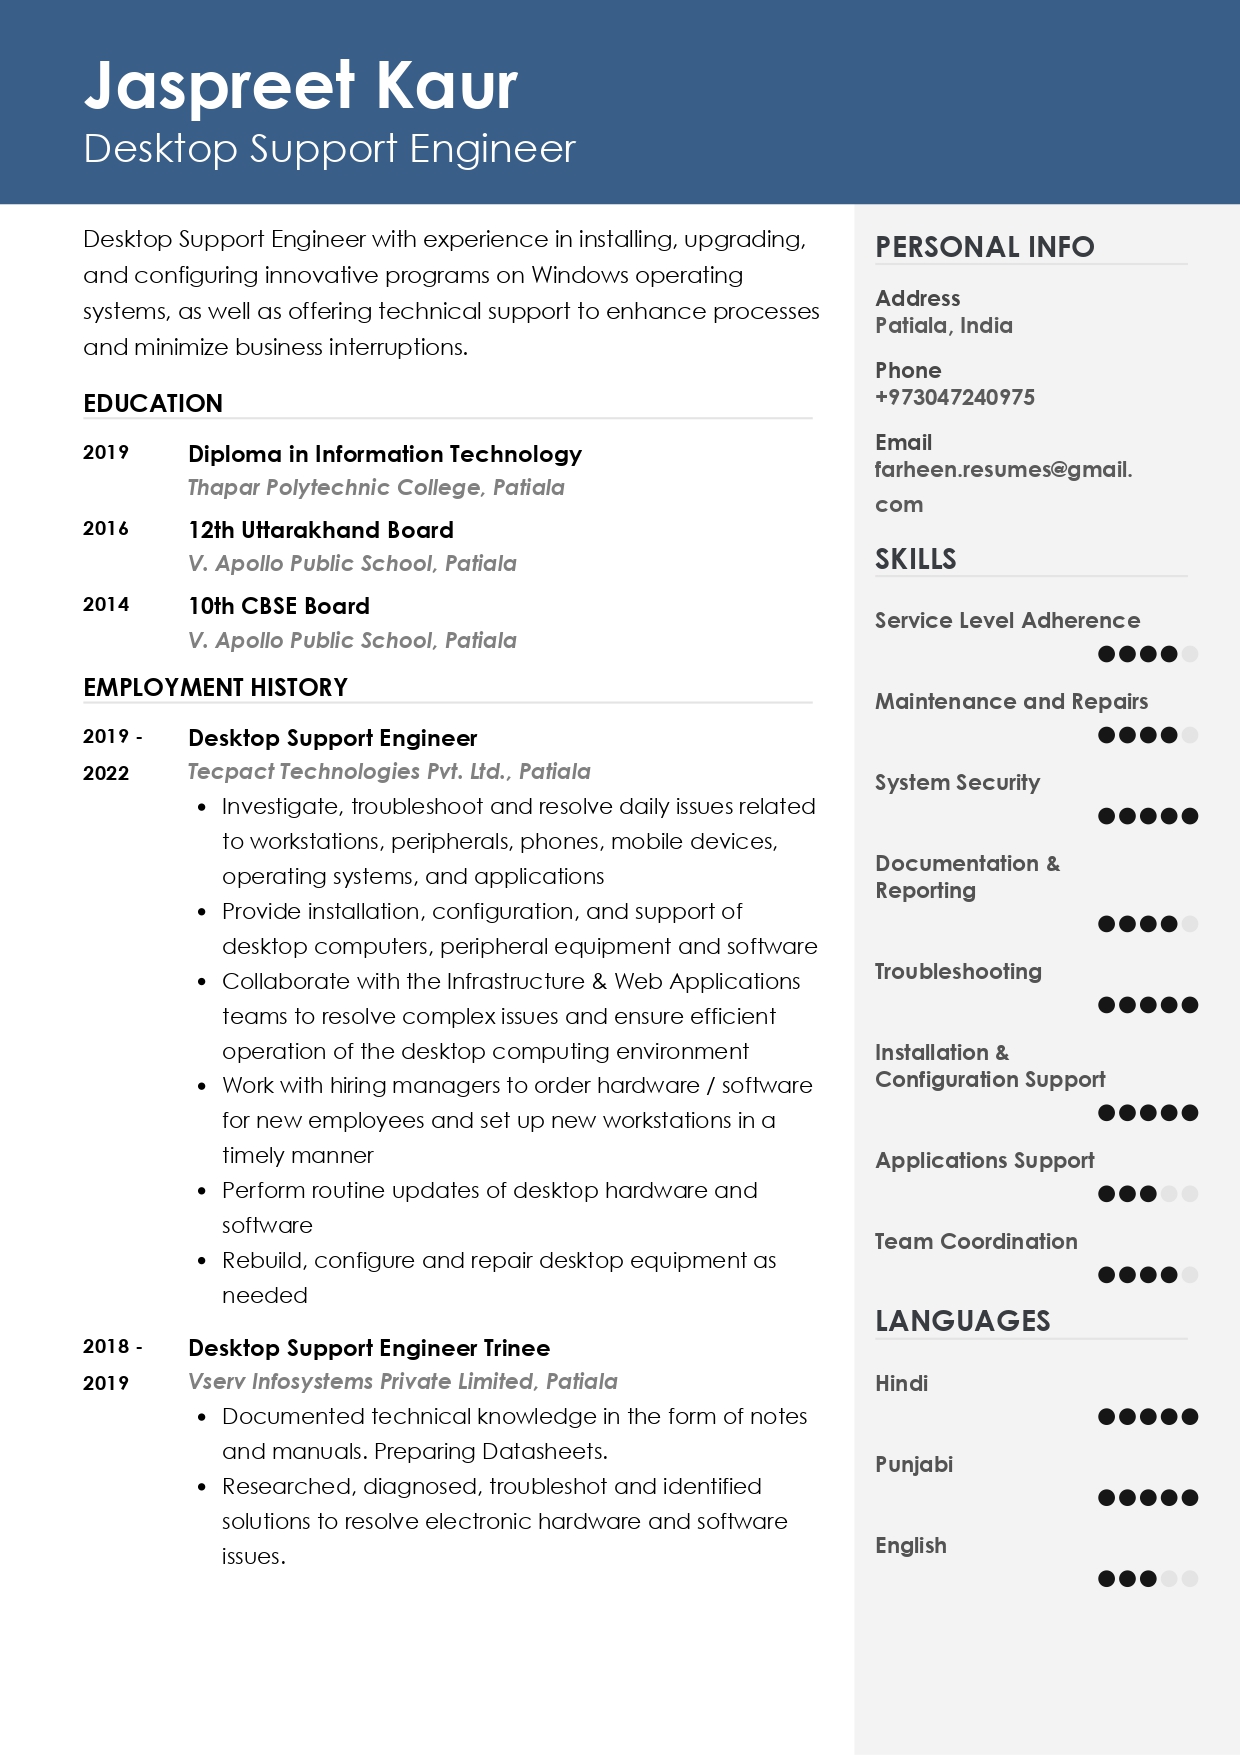 Resume of Desktop Support Engineer